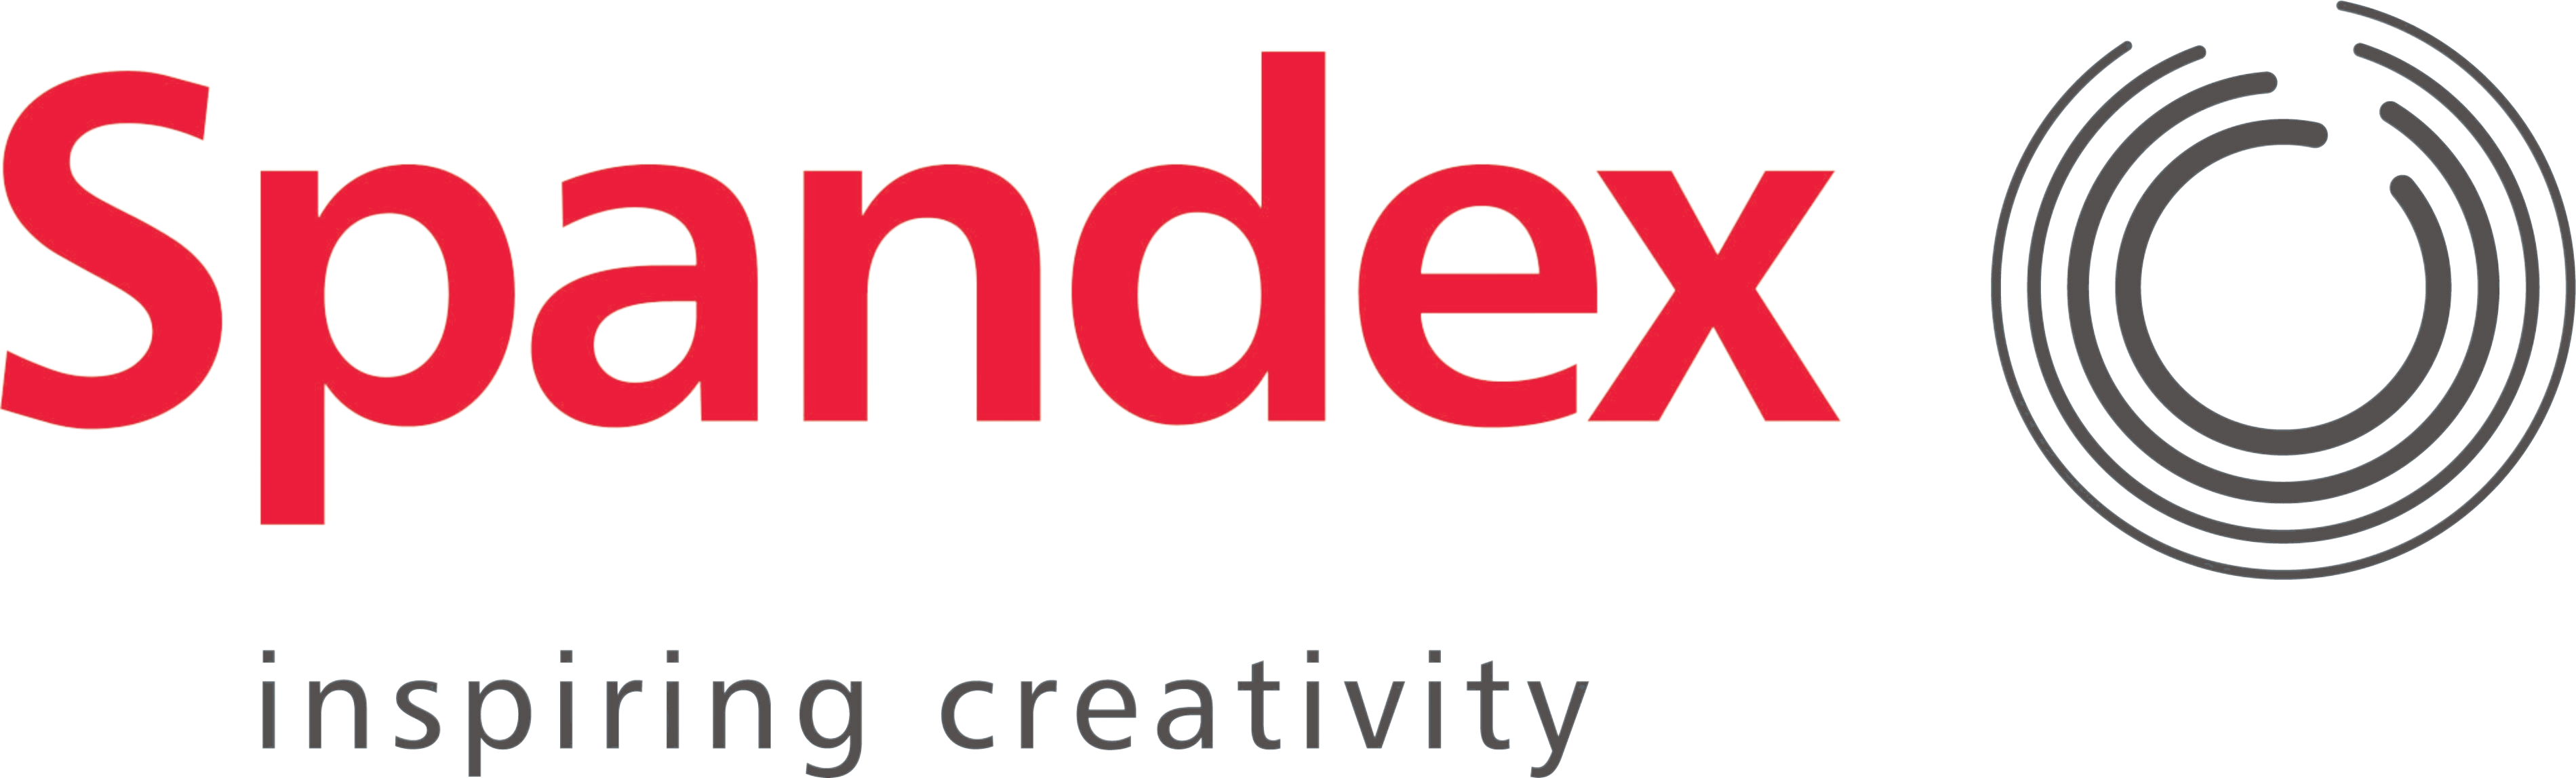 Spandex_Inspire-removebg